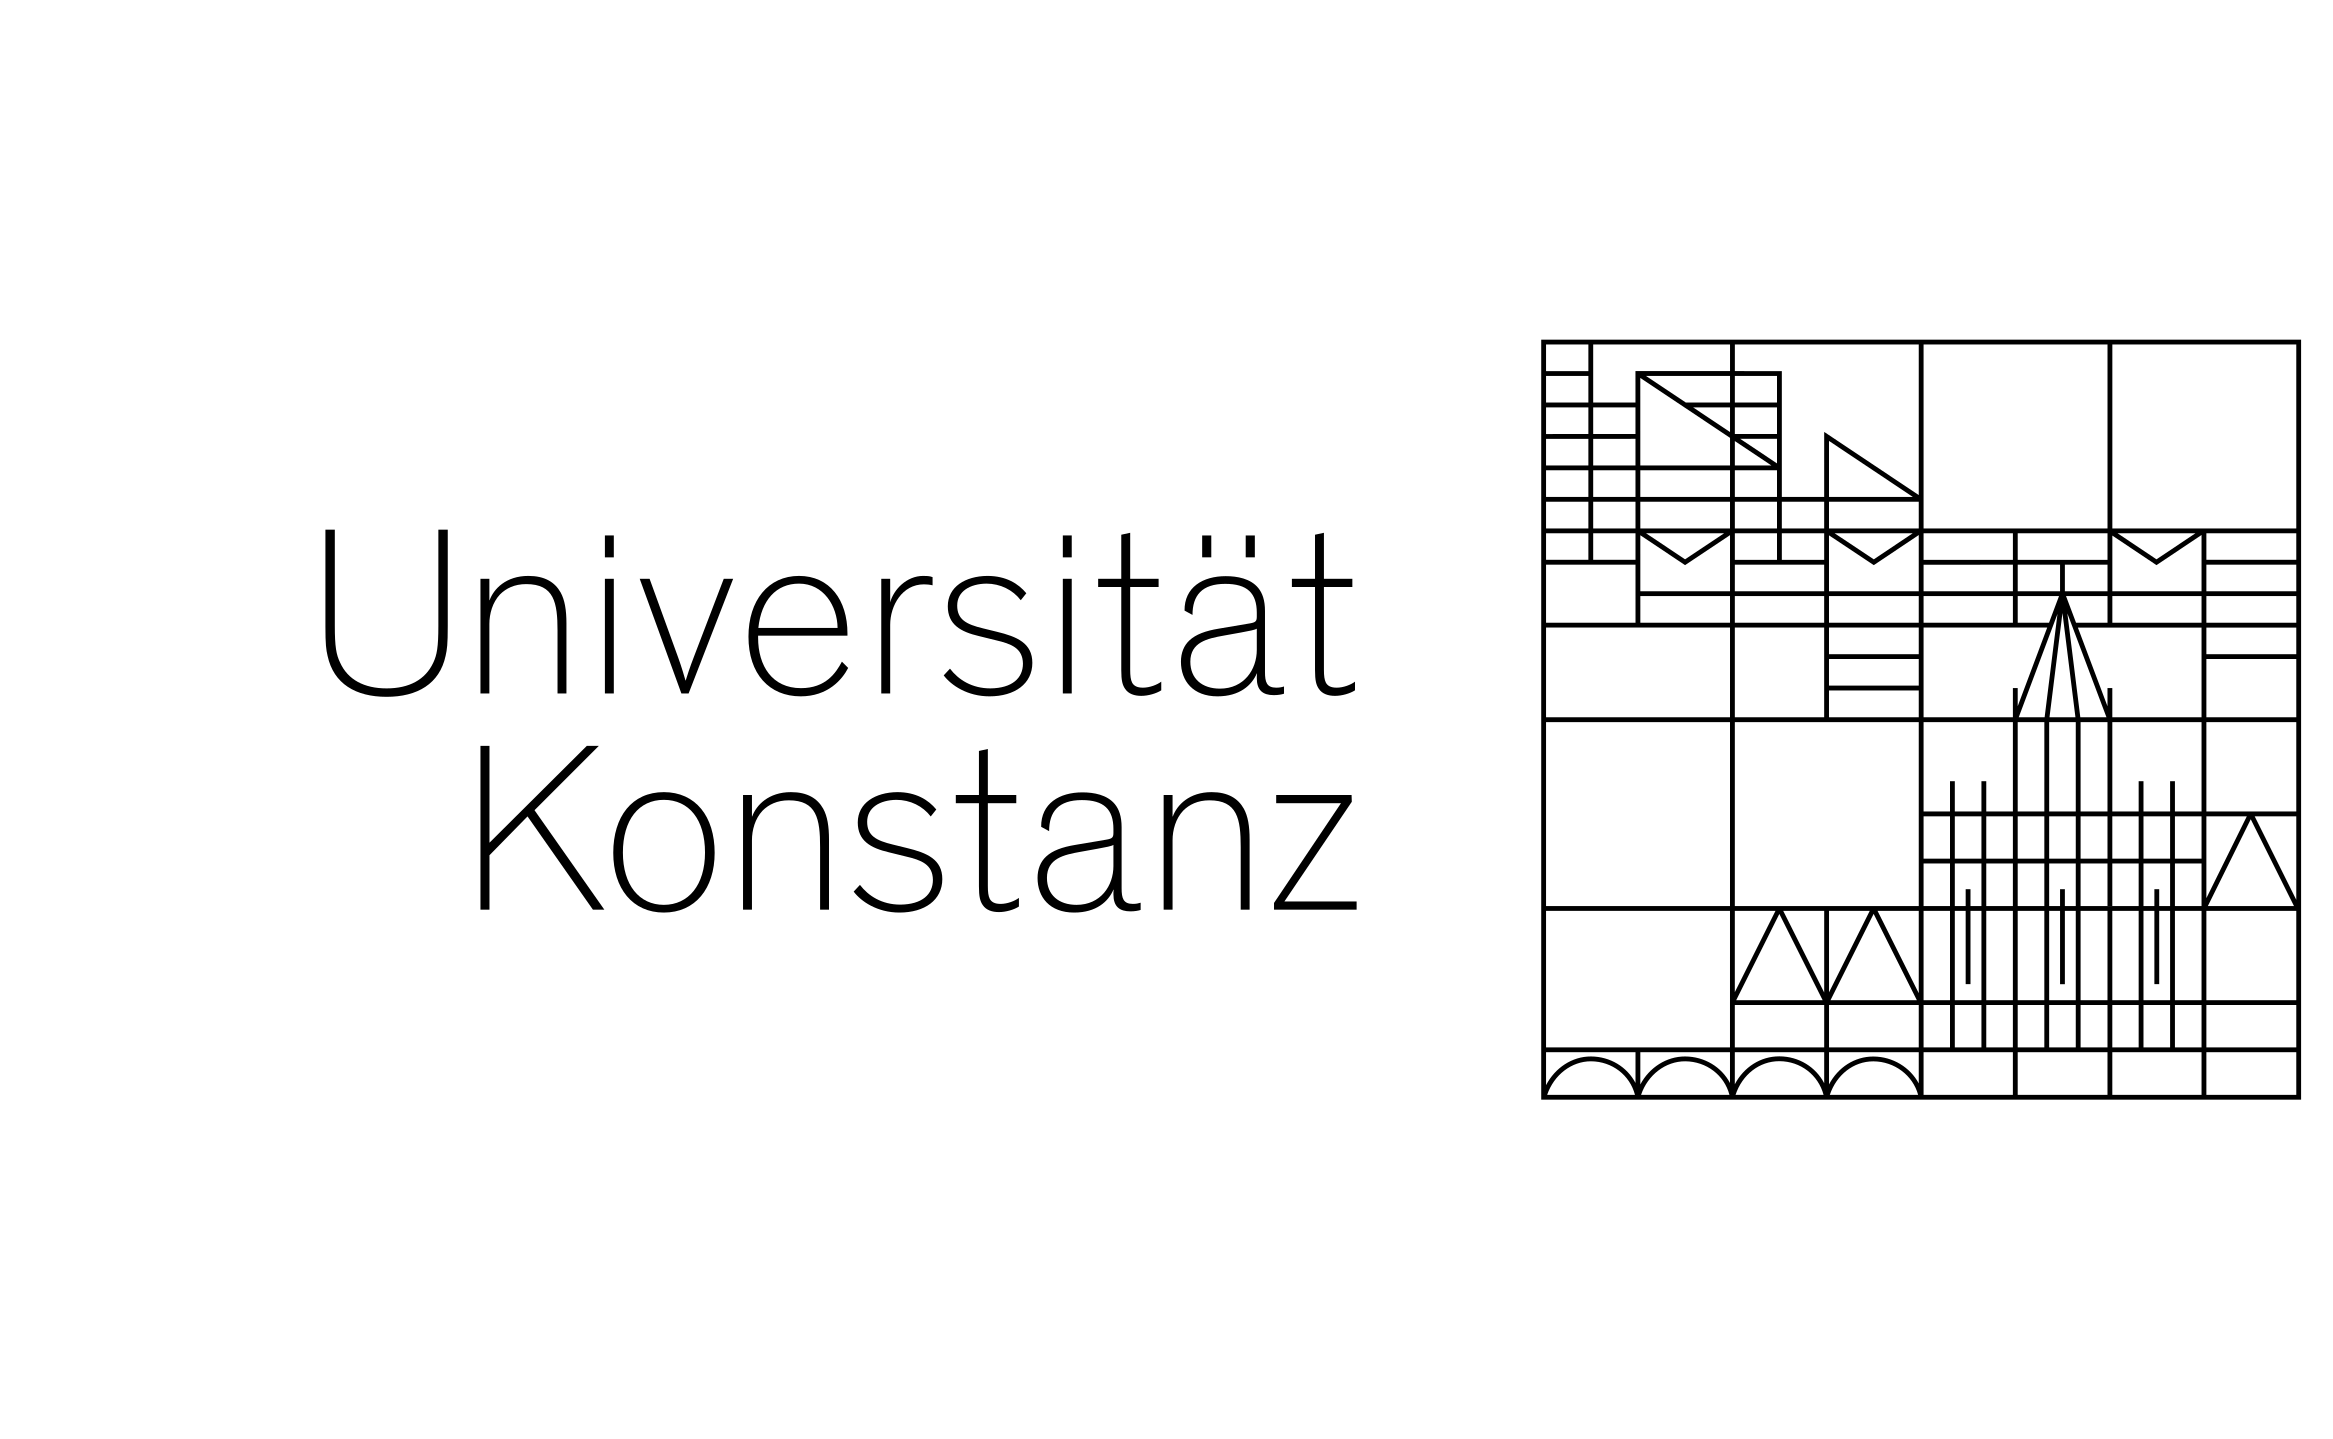 Logo Uni Konstanz